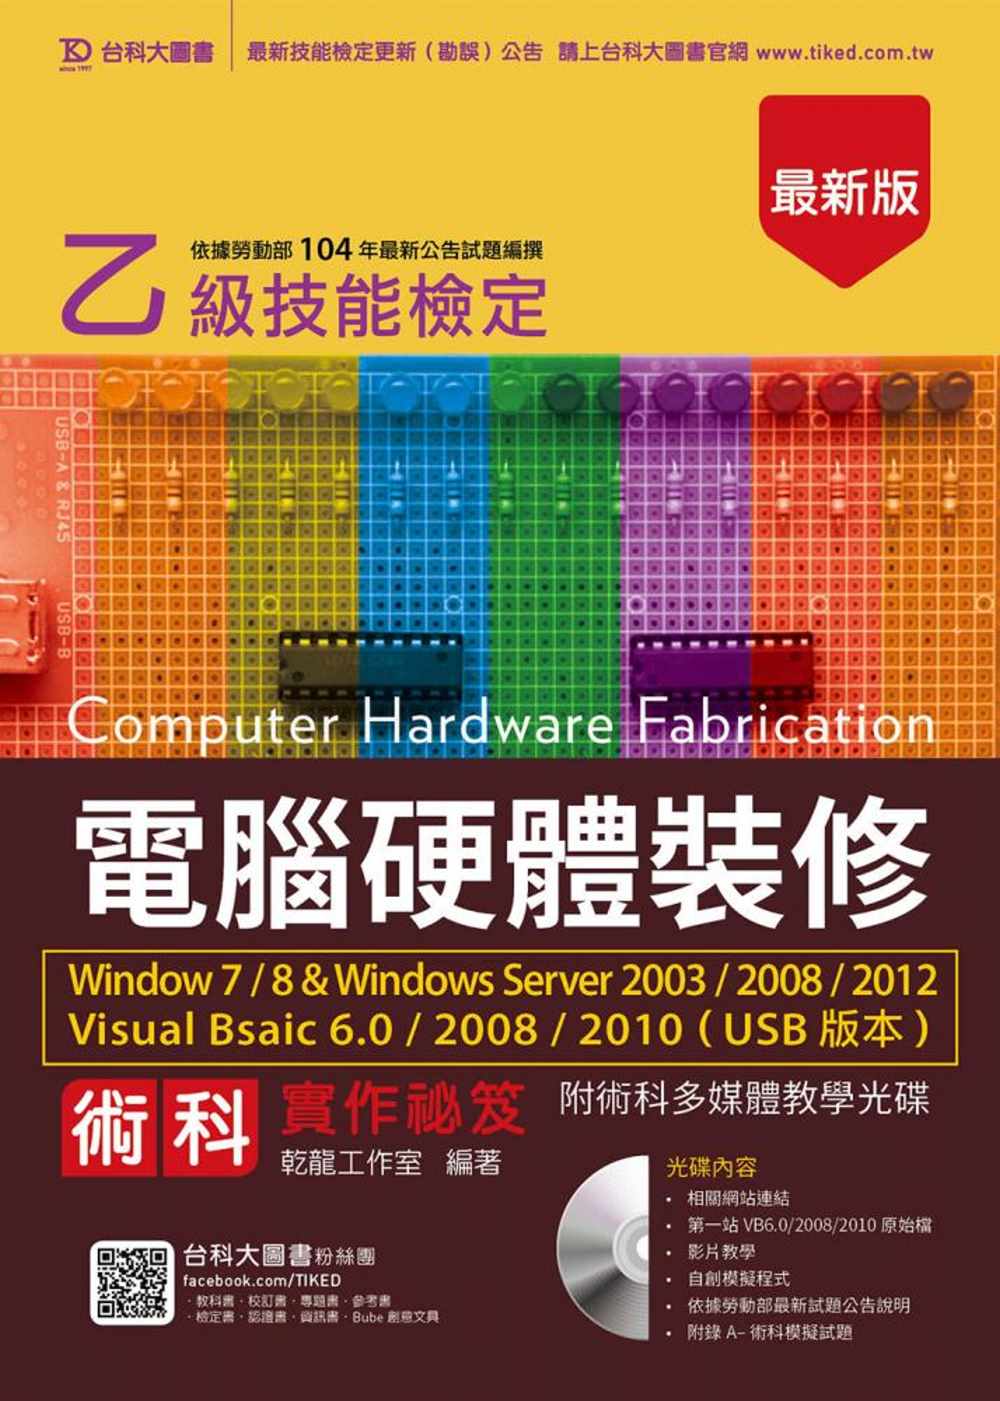 乙級電腦硬體裝修術科實作祕笈Windows 7 / 8 & Windows Server 2003 / 2008 / 2012 Visual Bsaic 6.0 / 2008 / 2010 (USB版本)附贈術科多媒體教學光碟 - 最新版